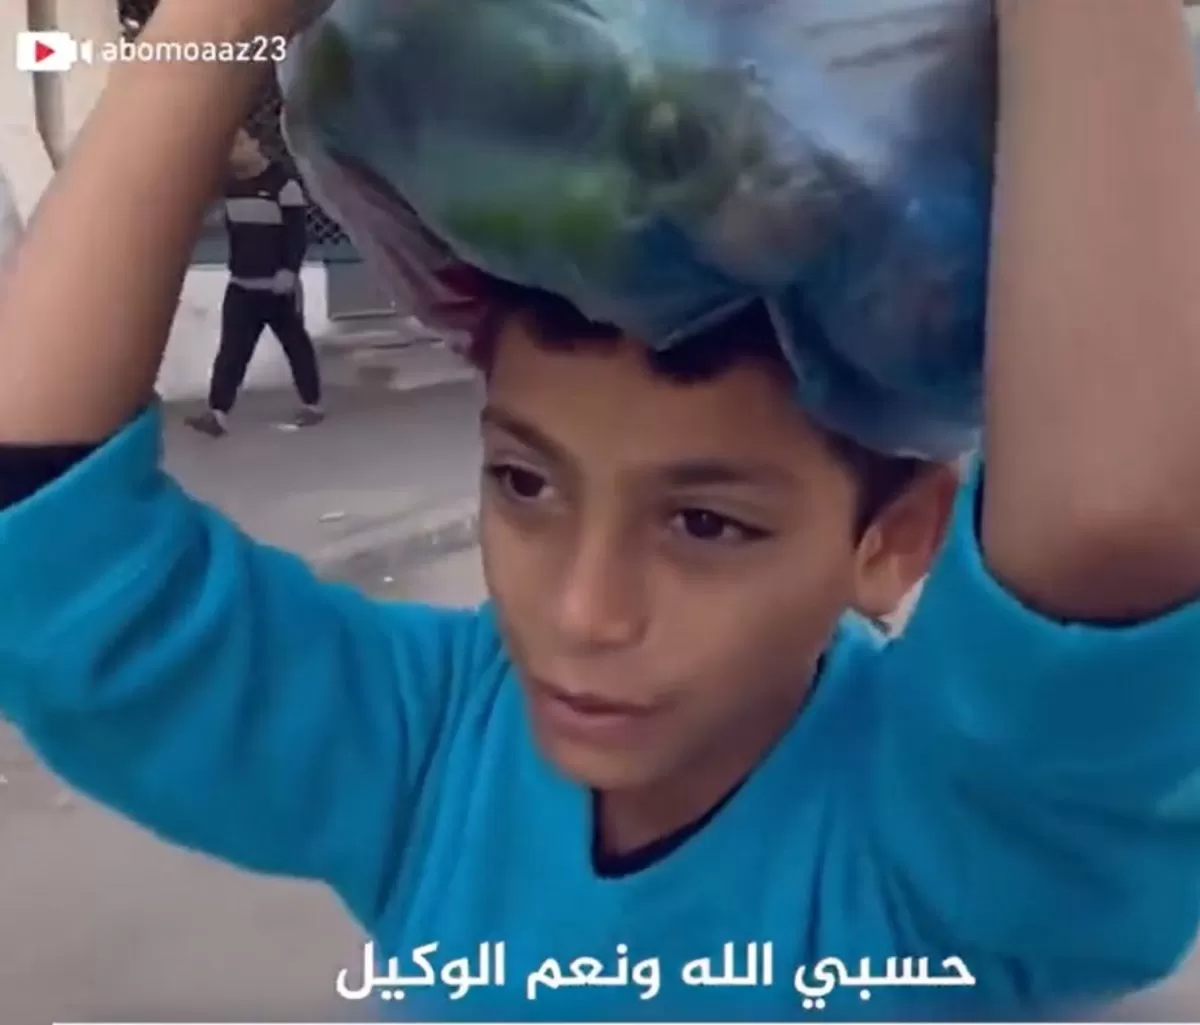 معاناة طفل فلسطيني في توصيل الطعام لأهله النازحين